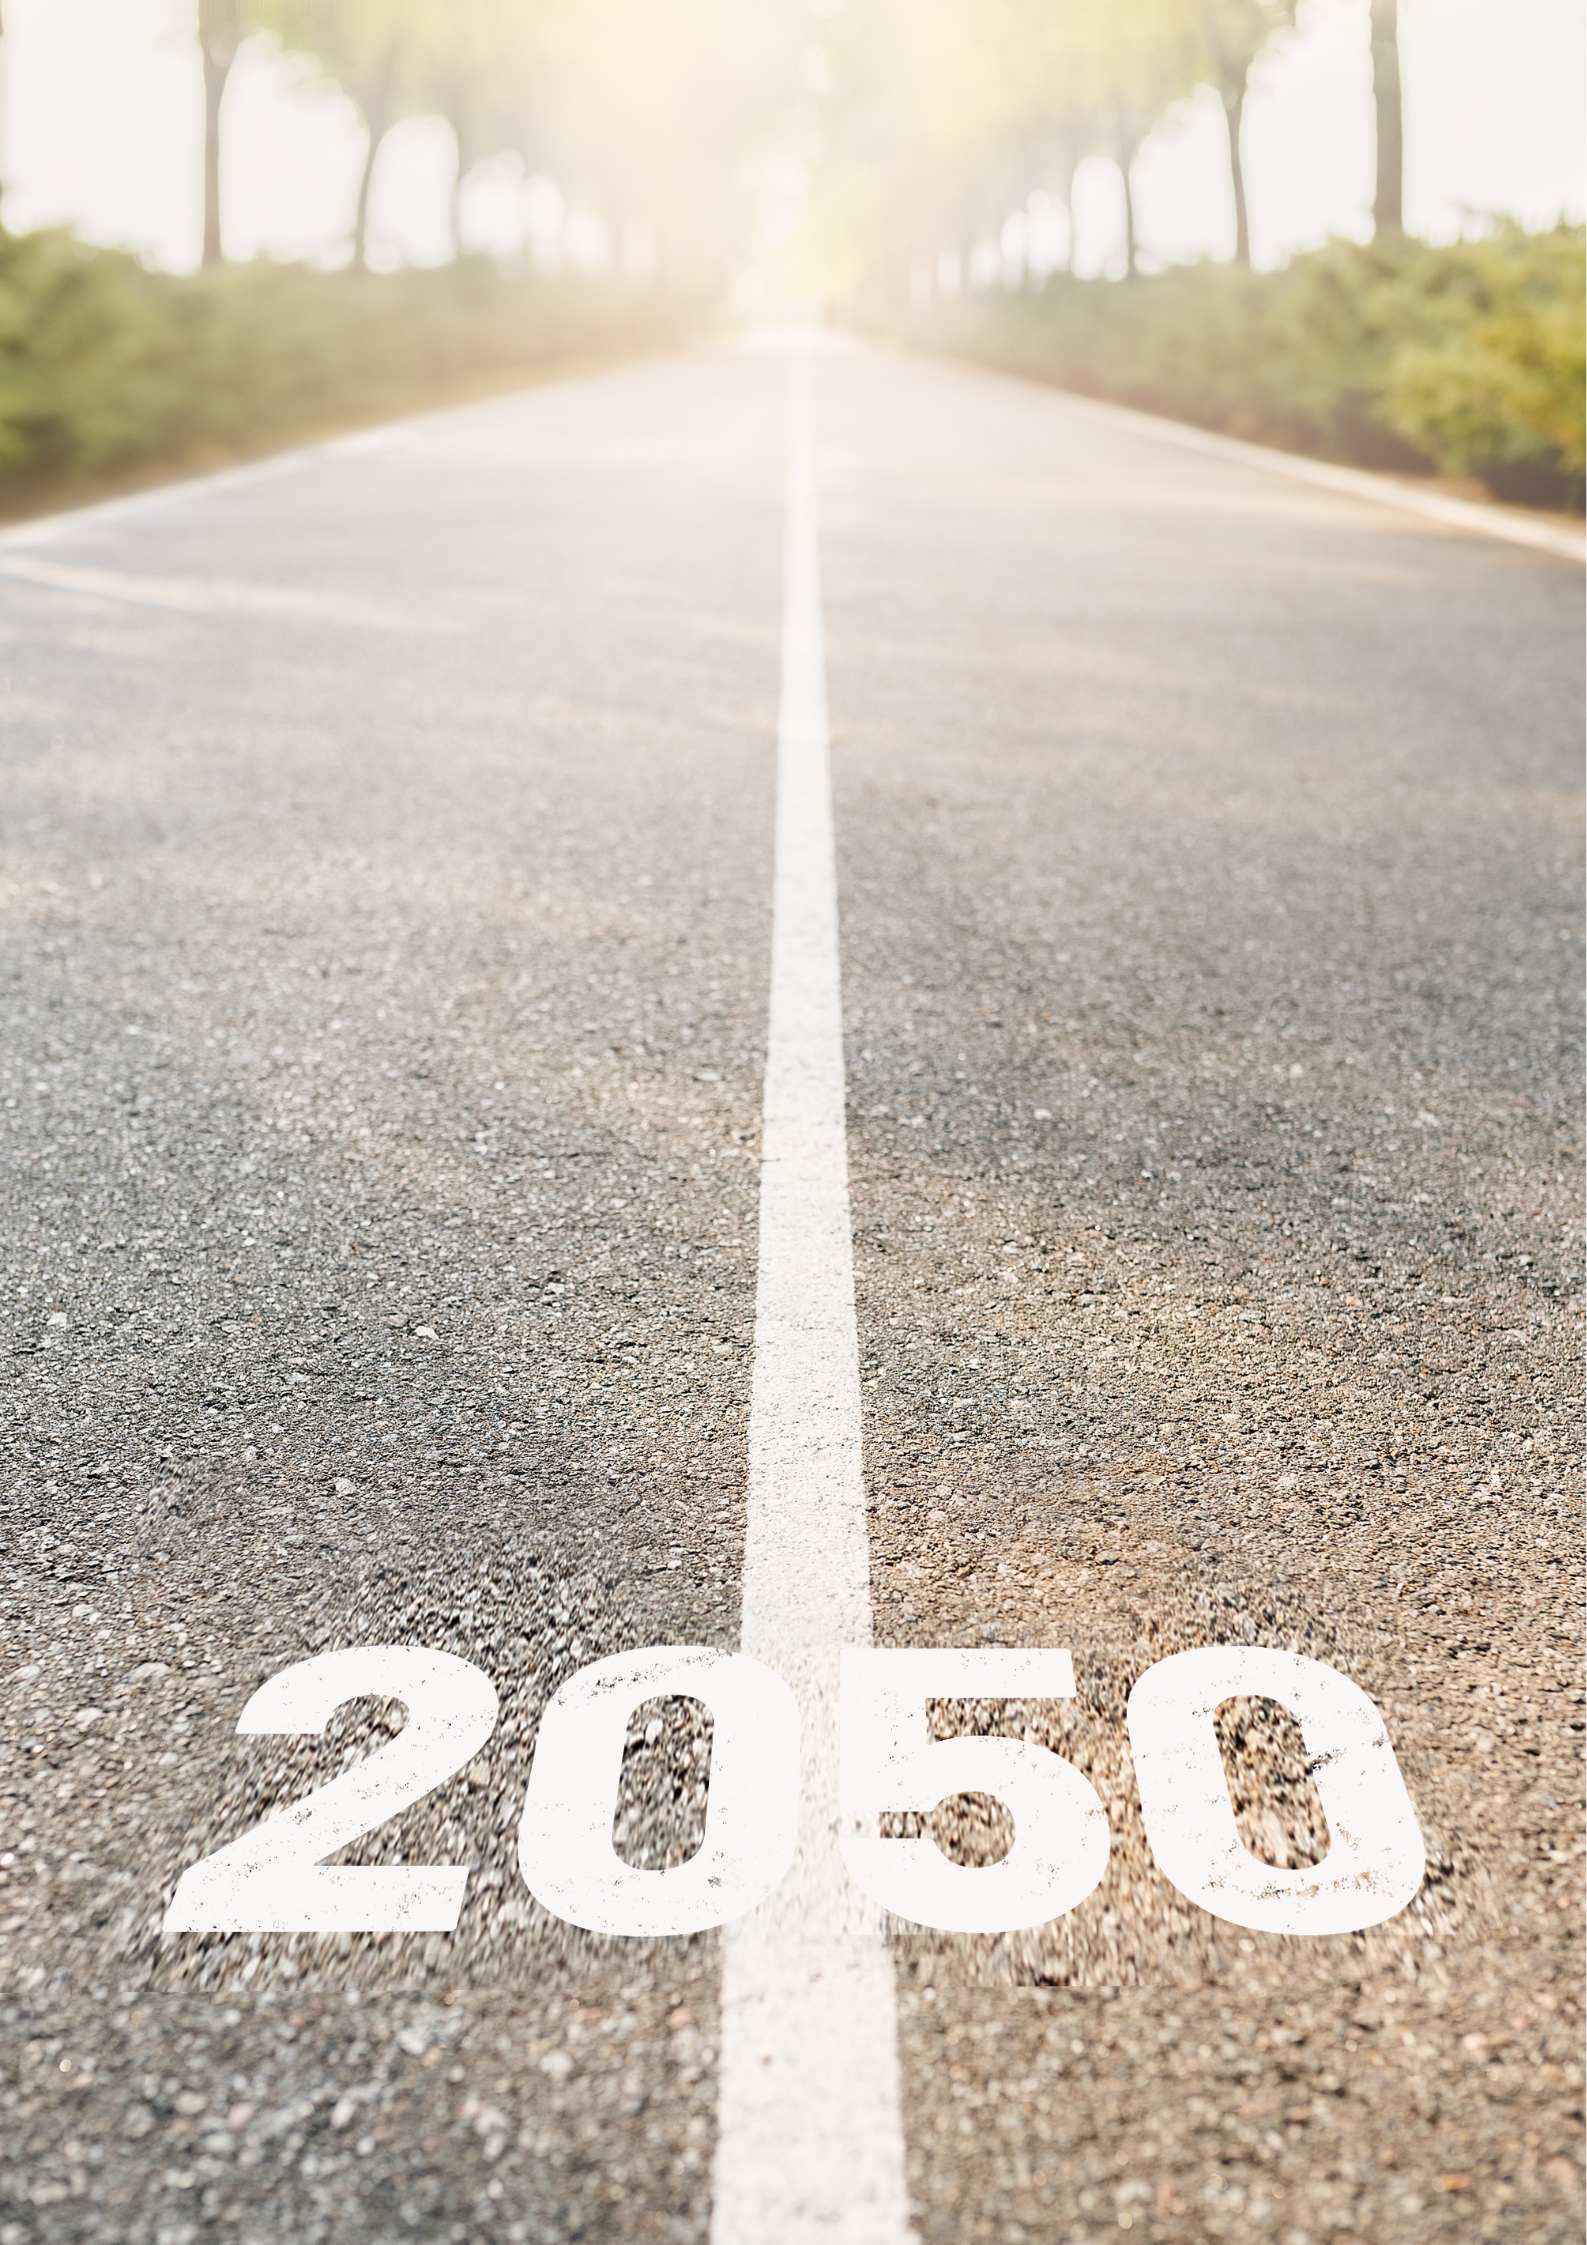 objectif neutralité climatique 2050